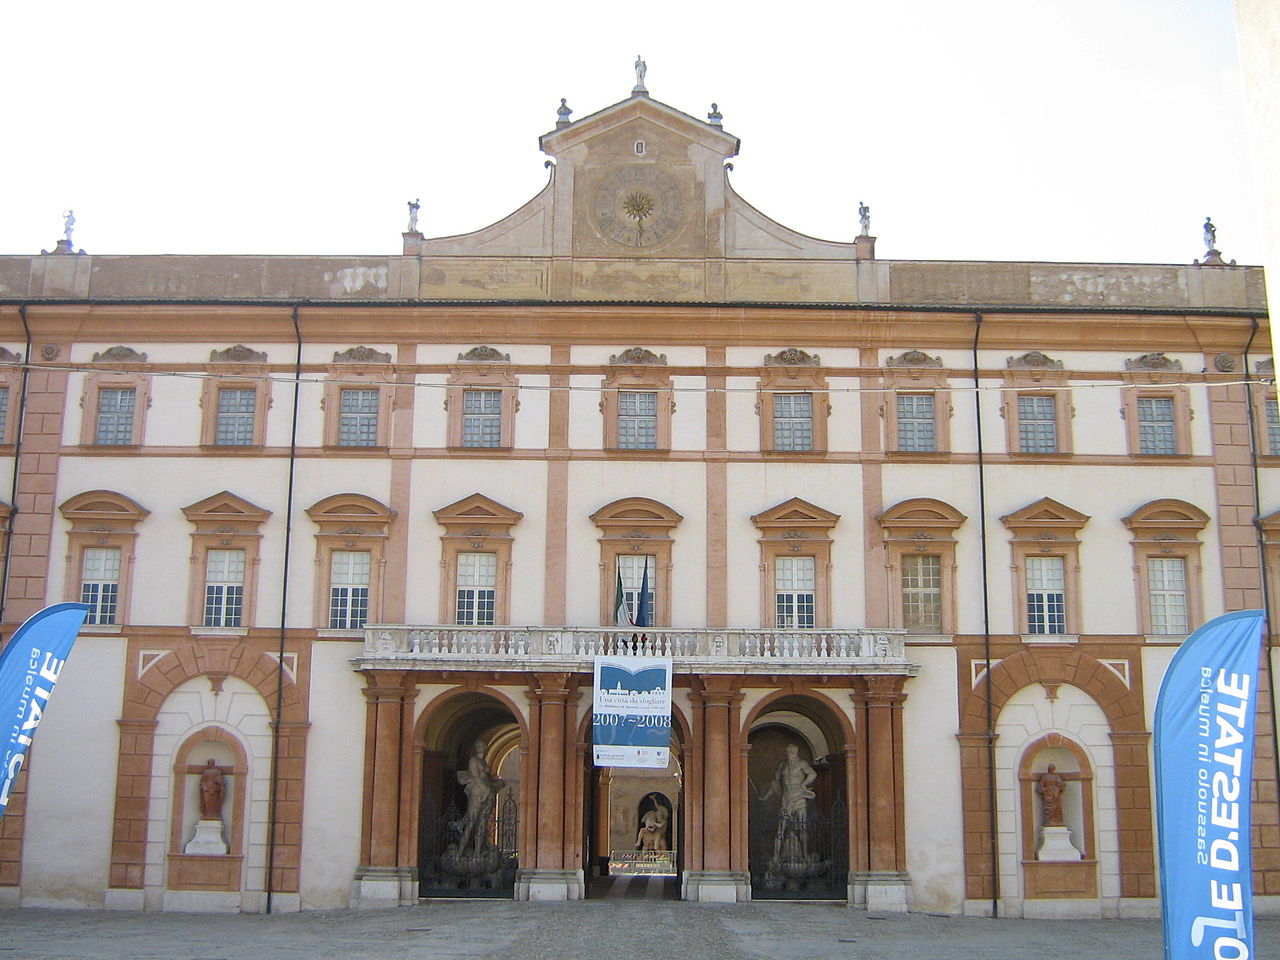 Giornate Fai 2015: Palazzo Ducale di Sassuolo